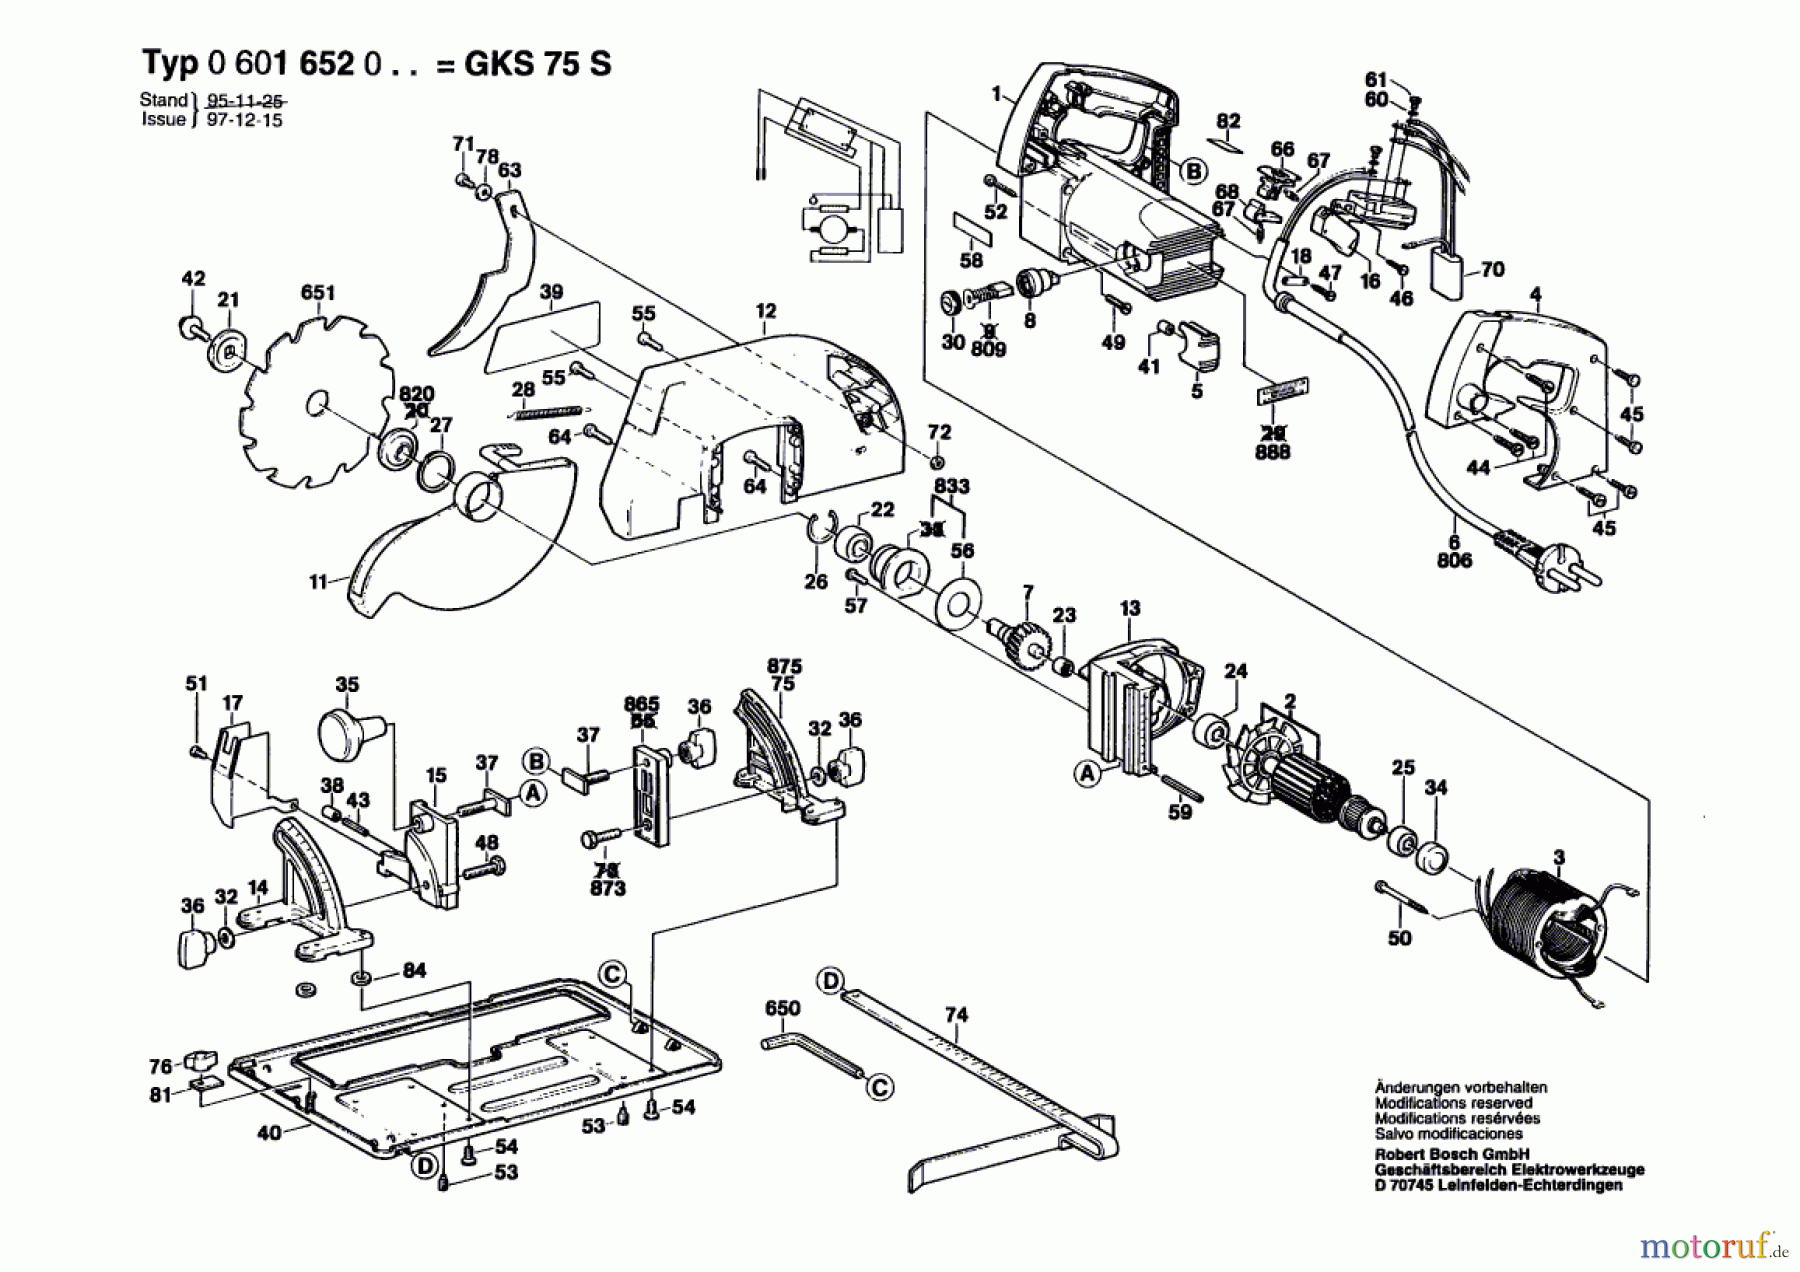  Bosch Werkzeug Handkreissäge GKS 75 S Seite 1